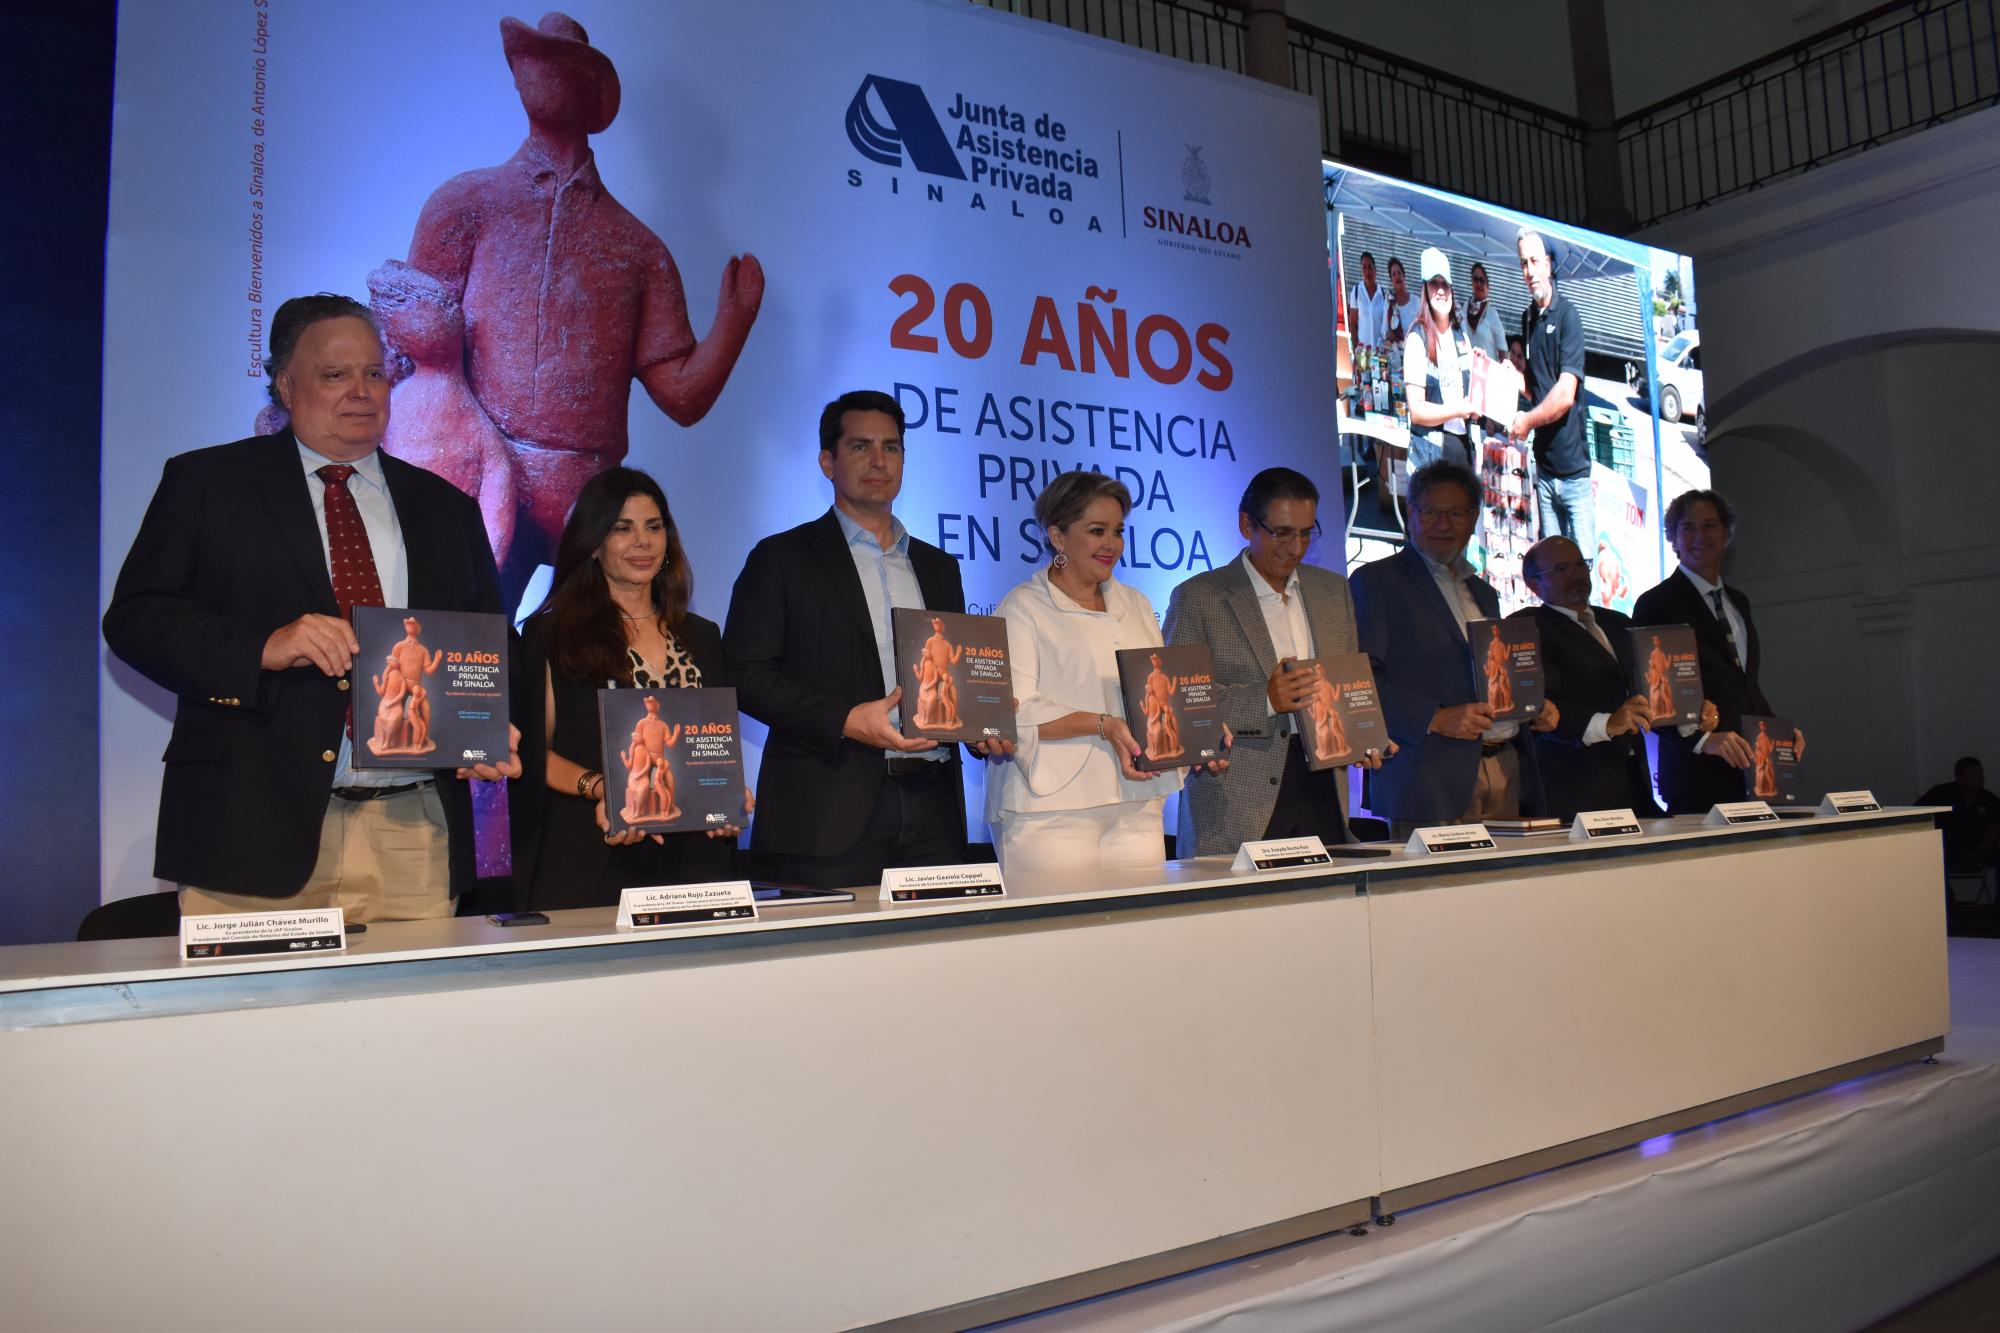 $!Ex presidentes de la junta e invitados presentan el tercer libro que lanza la JAP Sinaloa.